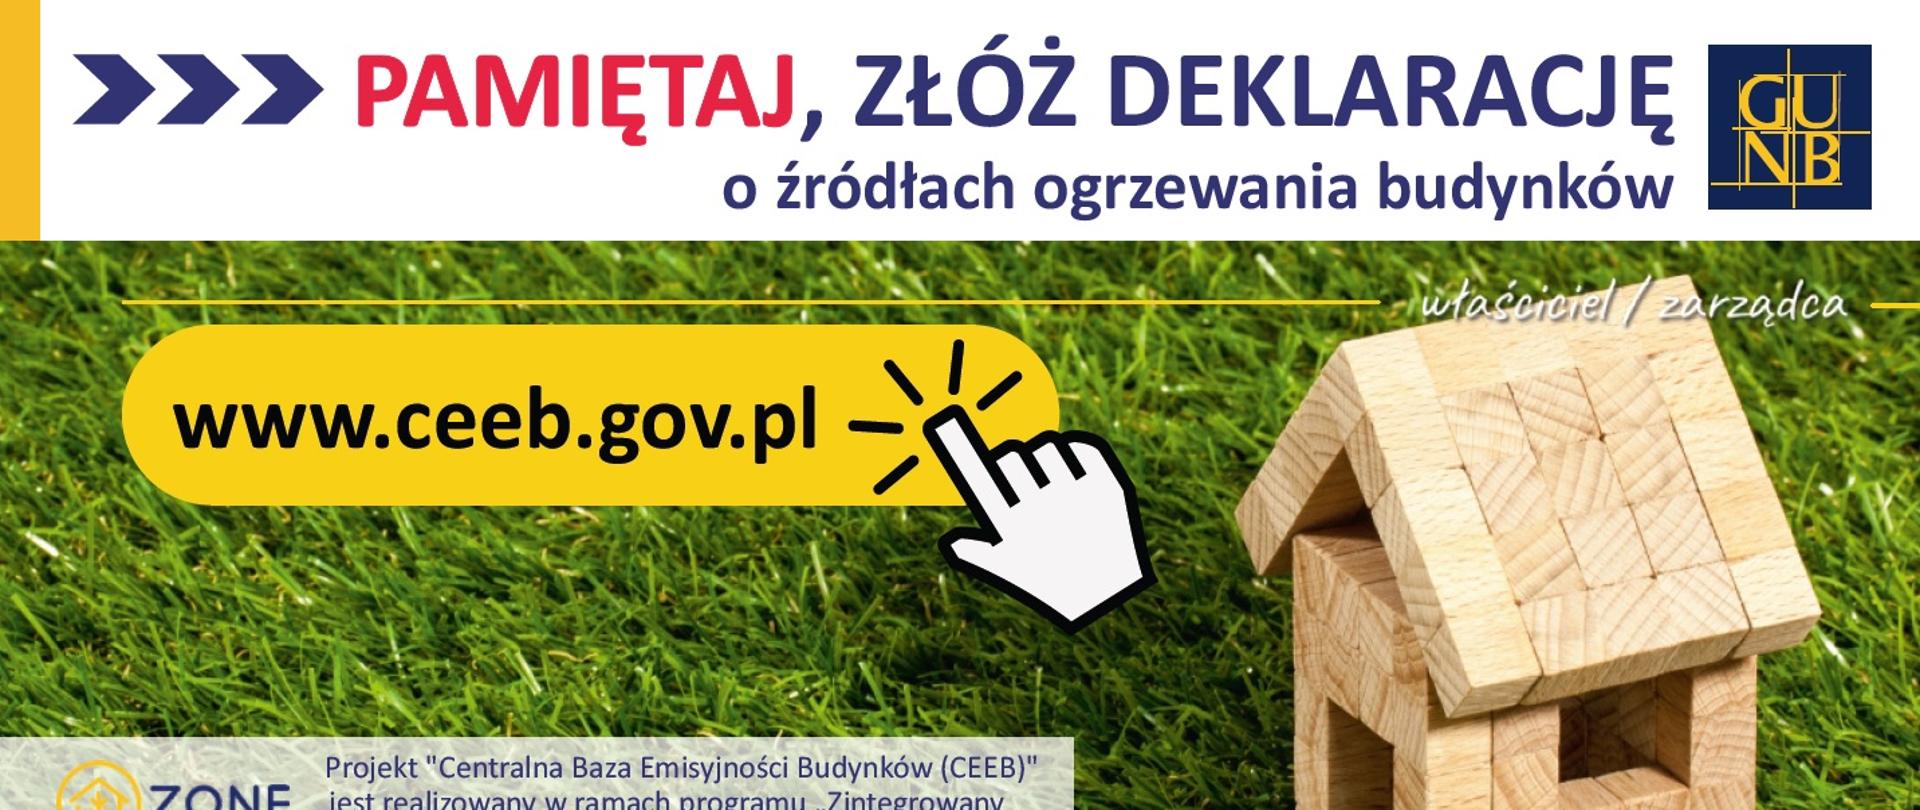 Pamiętaj złóż deklarację o źródłach ogrzewania budynków: www.ceeb.gov.pl. Informacje o tym czym jest CEEB, kto musi złożyć deklarację, do kiedy i jak ją złożyć. Informacje zawarte w artykule. Nad tekstem informacyjnym obraz: na zielonej trawie dom z klocków.